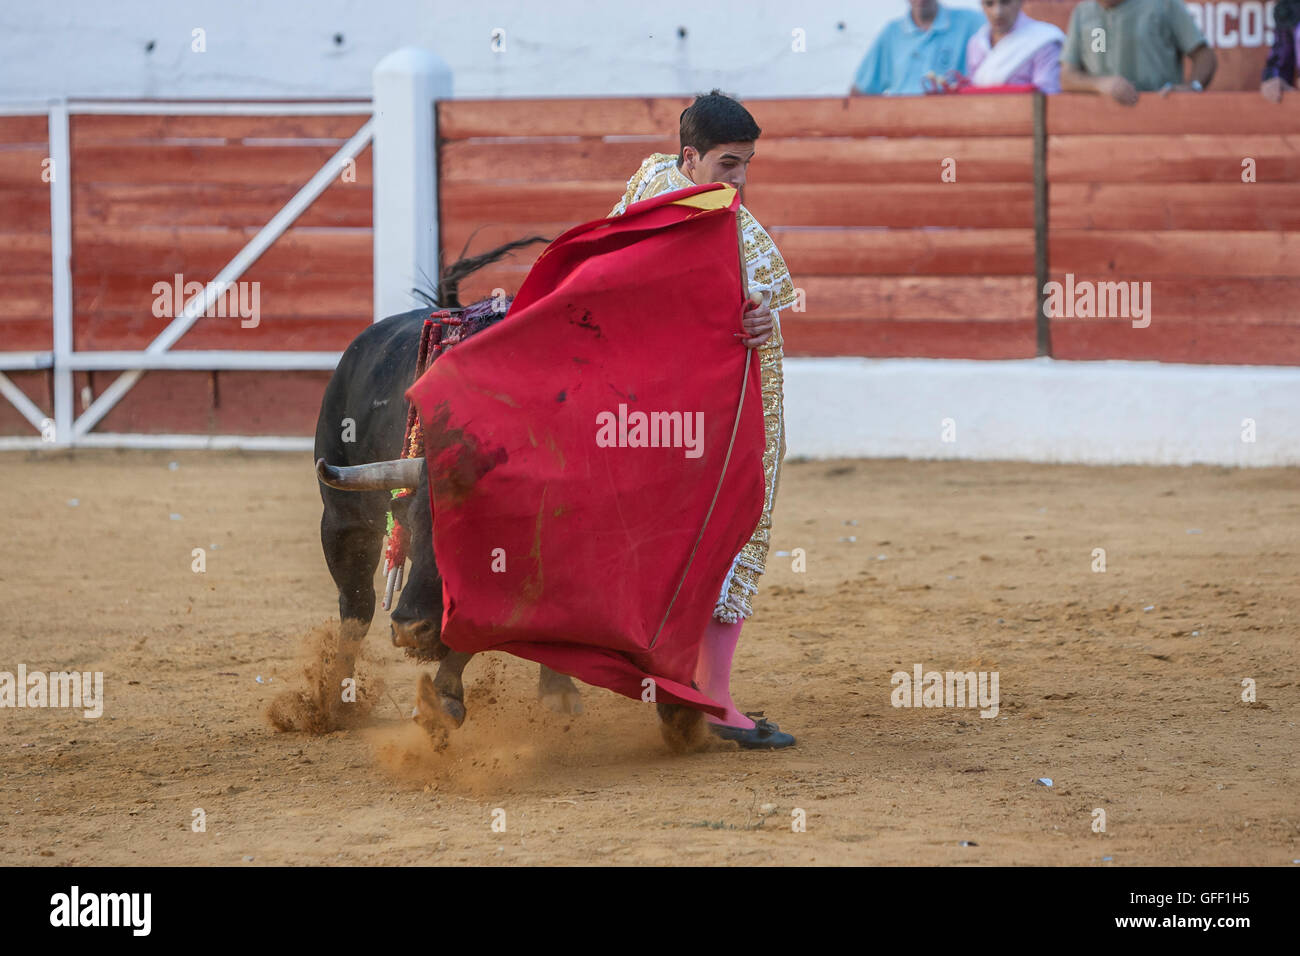 Il torero spagnolo Jose Carlos Venegas la corrida con la stampella nella corrida di Sabiote, Spagna Foto Stock